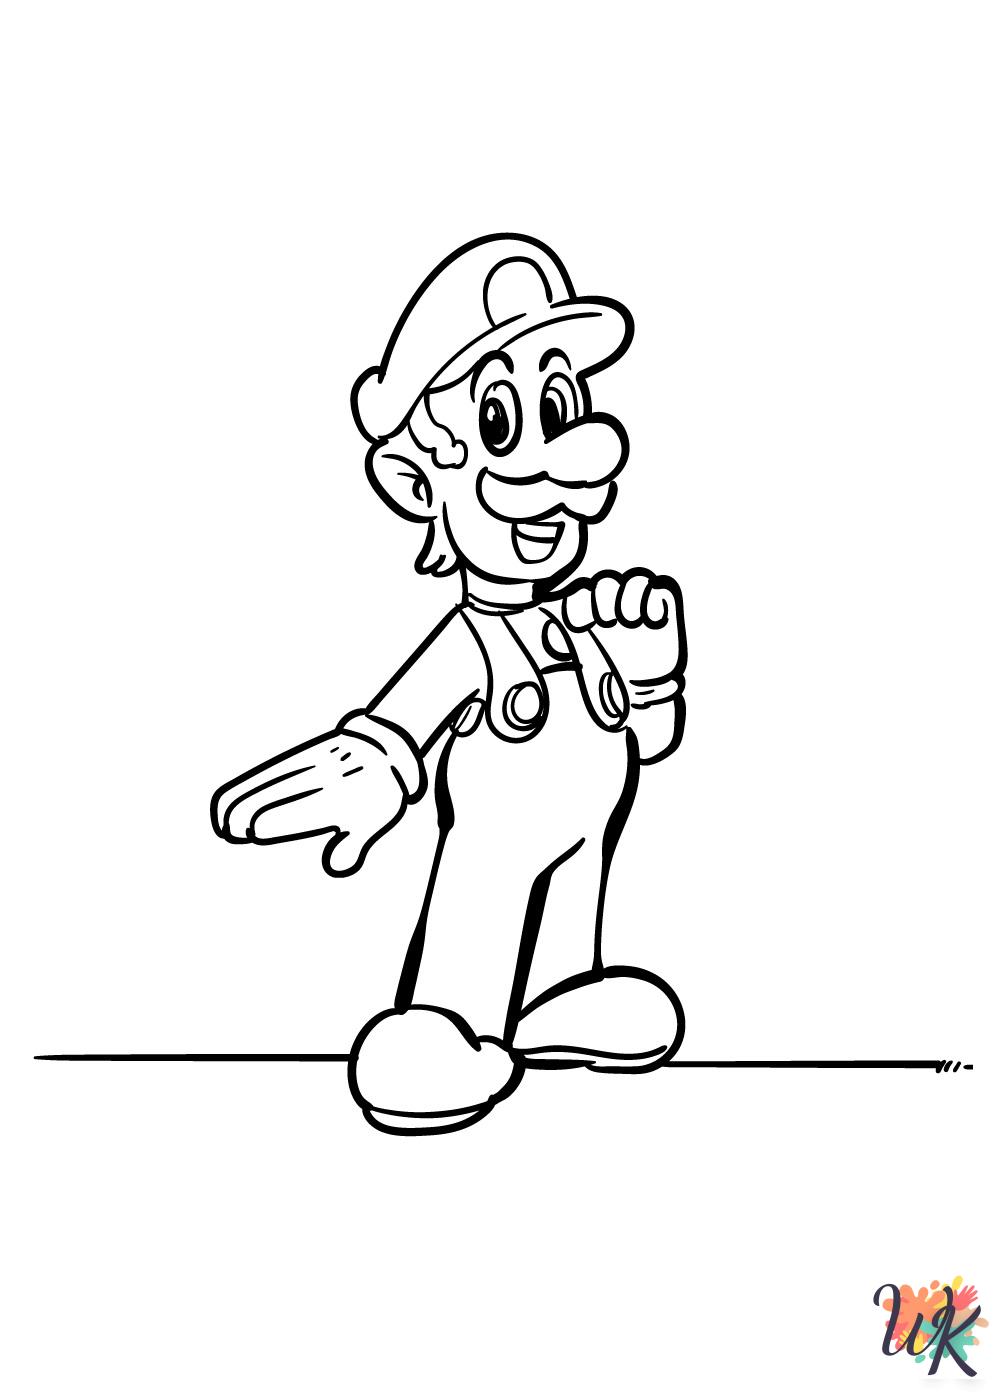 Super Mario Bros coloring pages printable